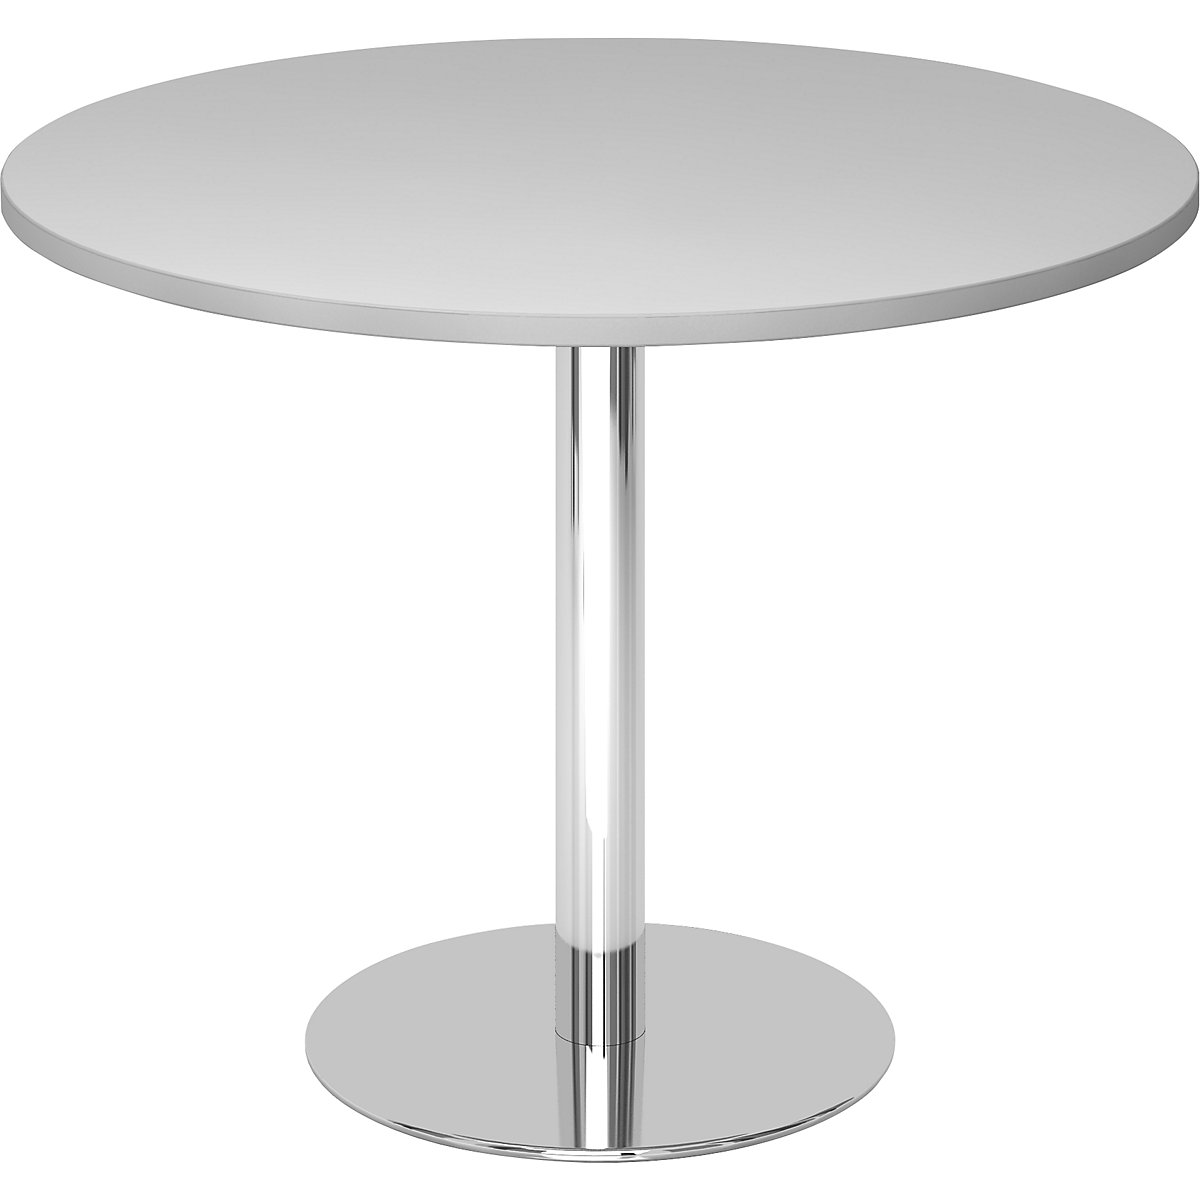 Konferencijski stol, Ø 1000 mm, visina 755 mm, kromirano postolje, ploča u svijetlosivoj boji-7